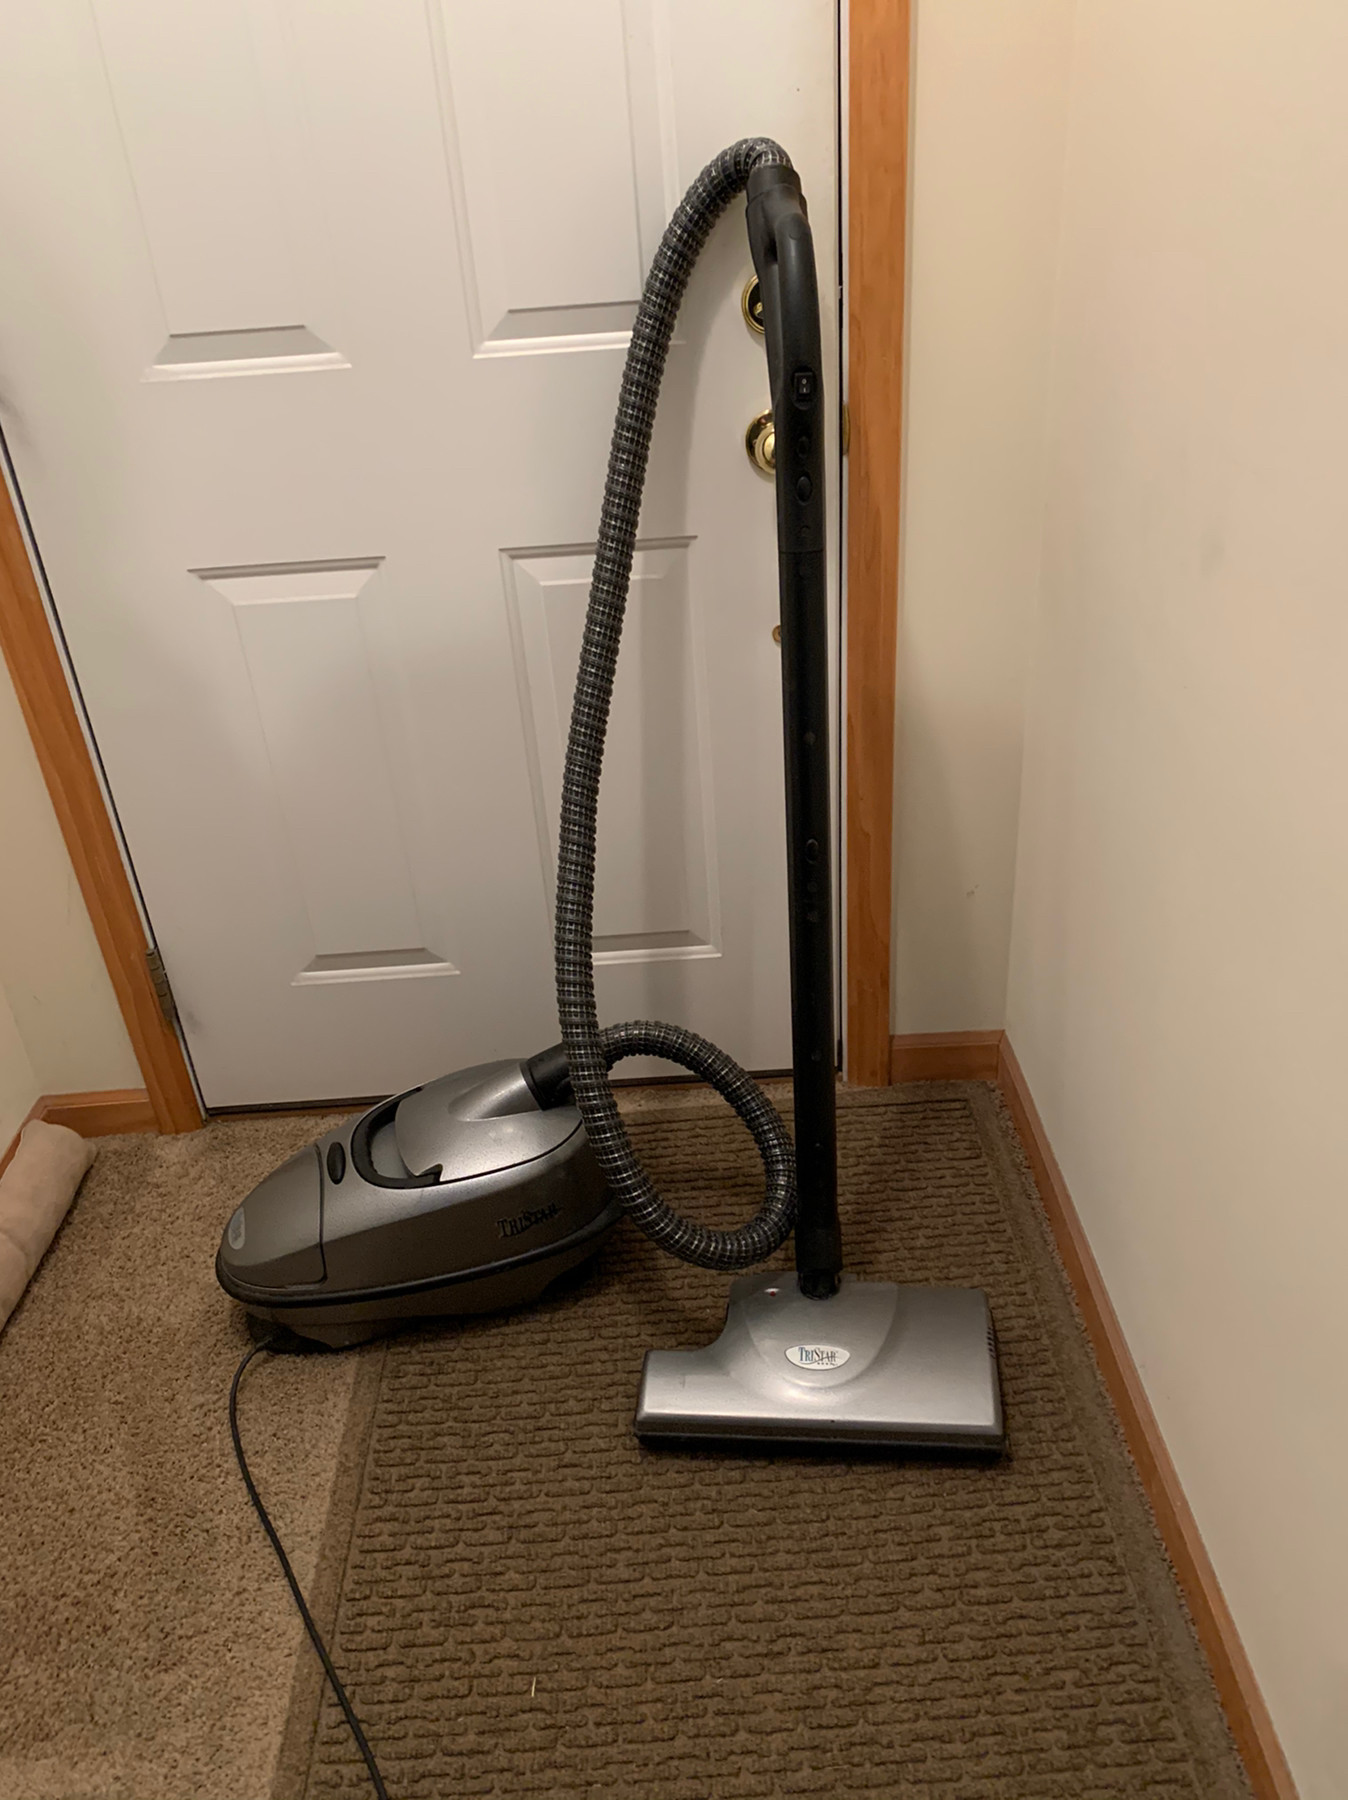 Tristar vacuum cleaner